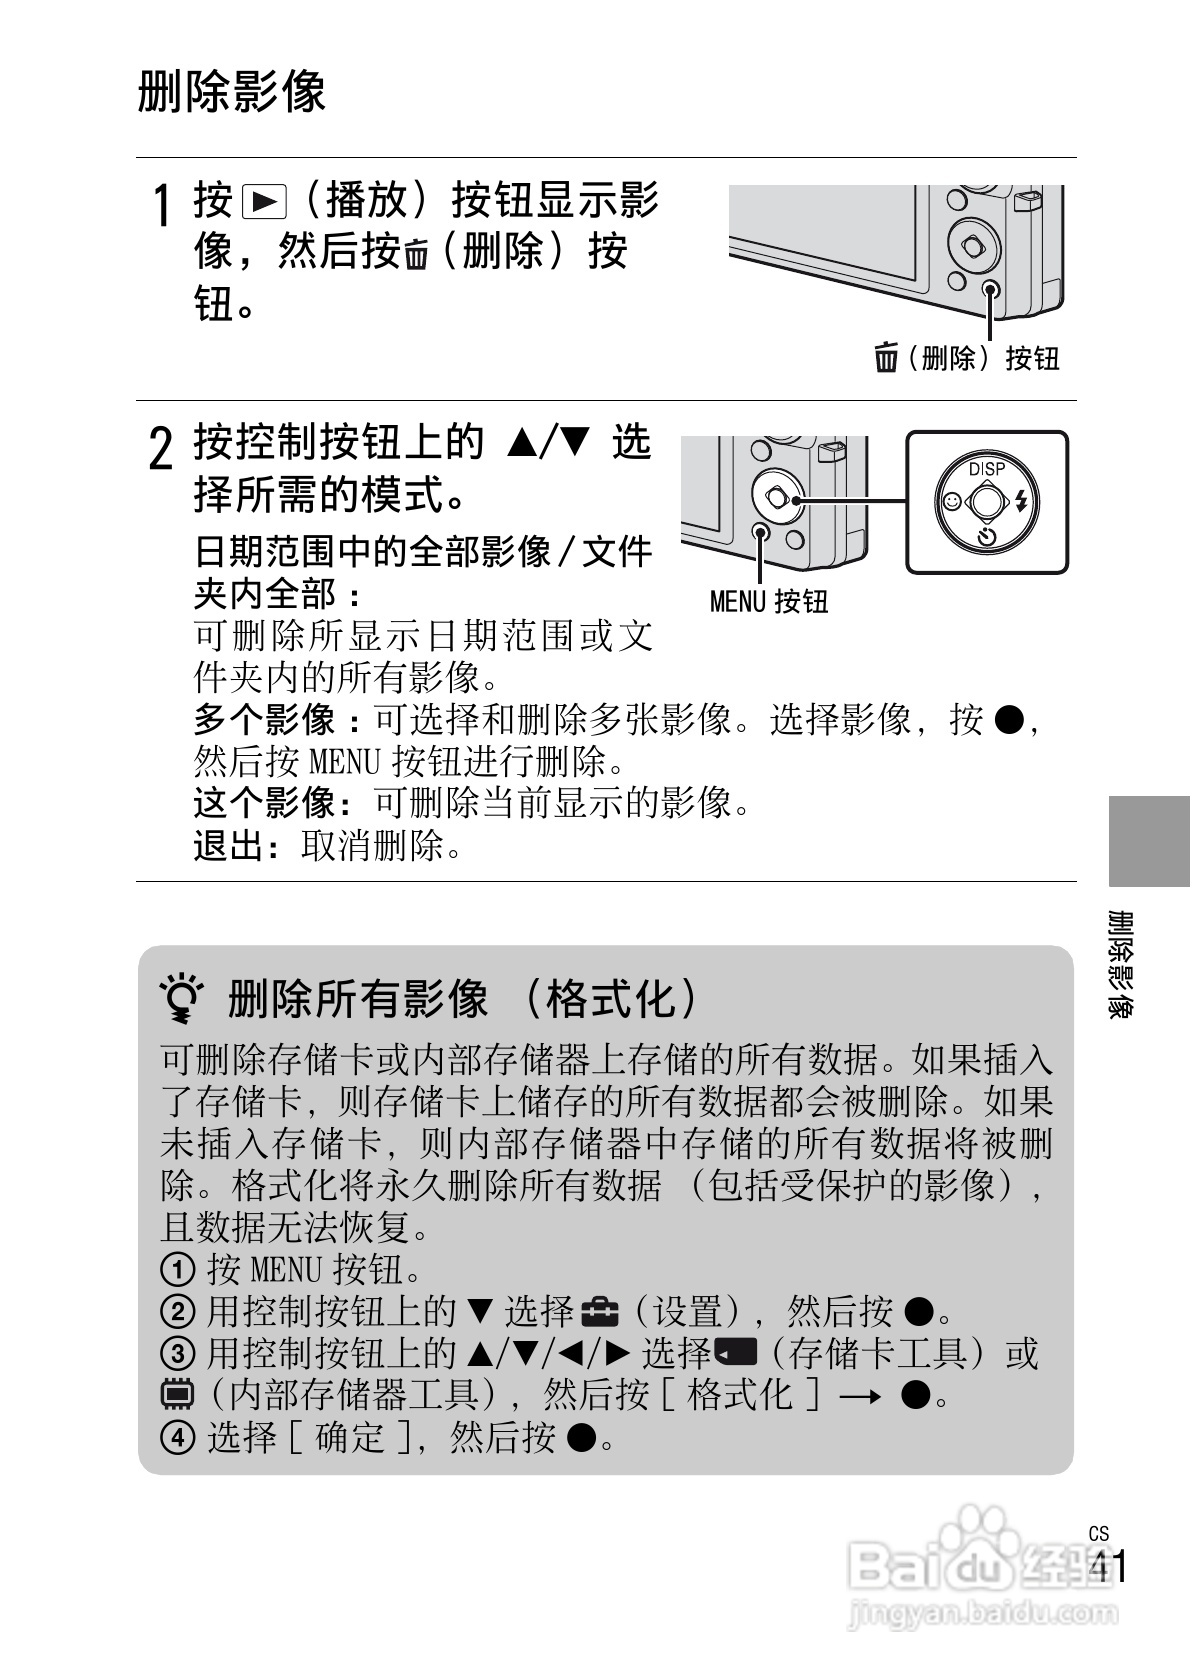 本篇为《索尼w390数码相机使用说明书,主要介绍该产品的使用方法